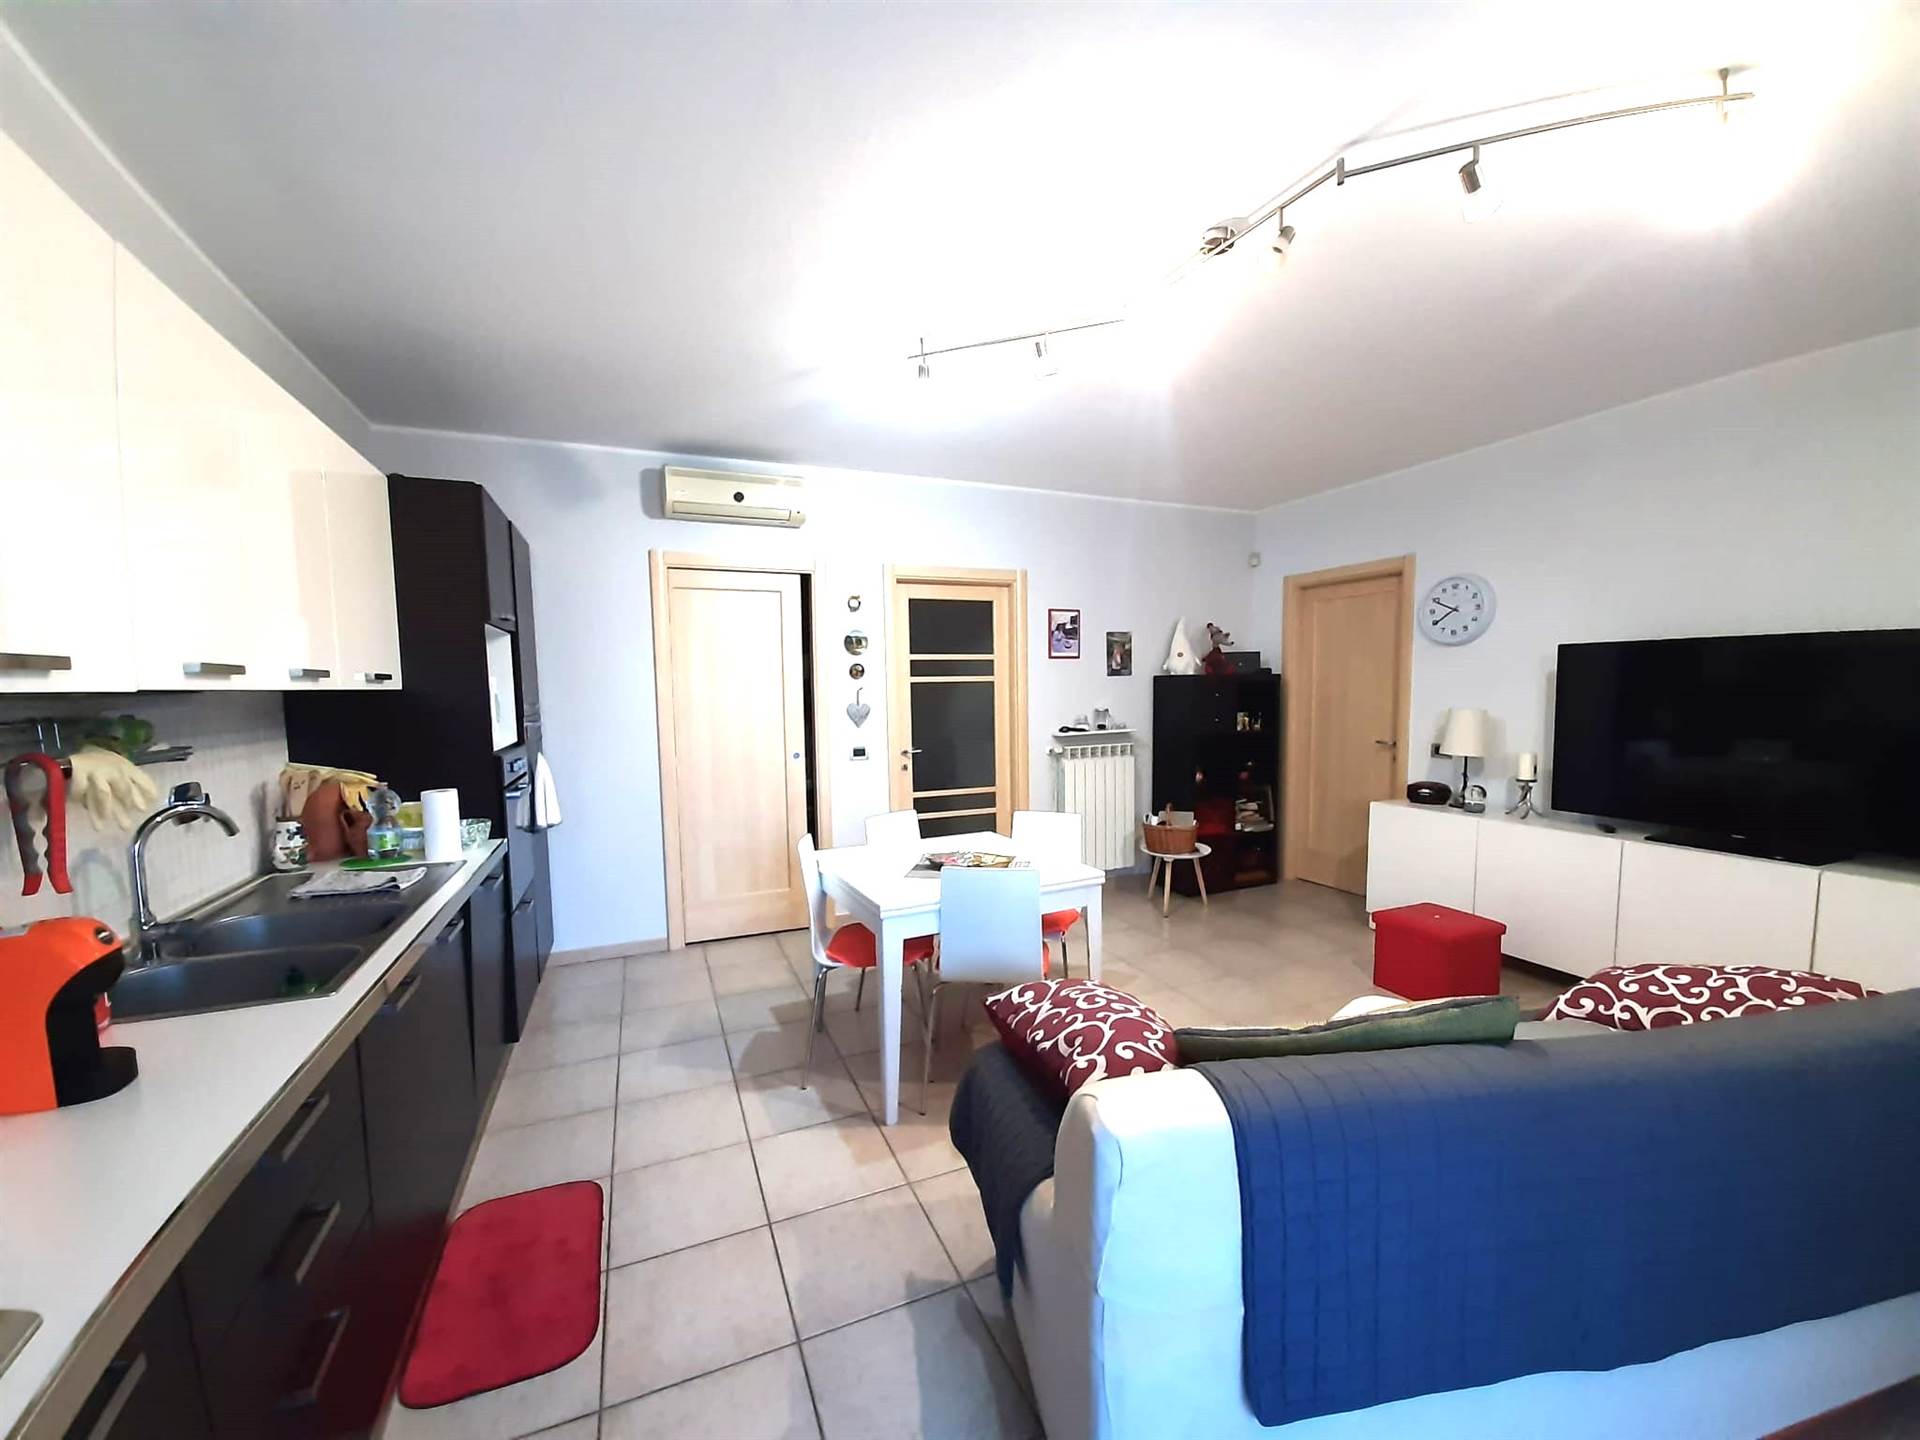 Appartamento indipendente in ottime condizioni in zona Cantagrillo a Serravalle Pistoiese